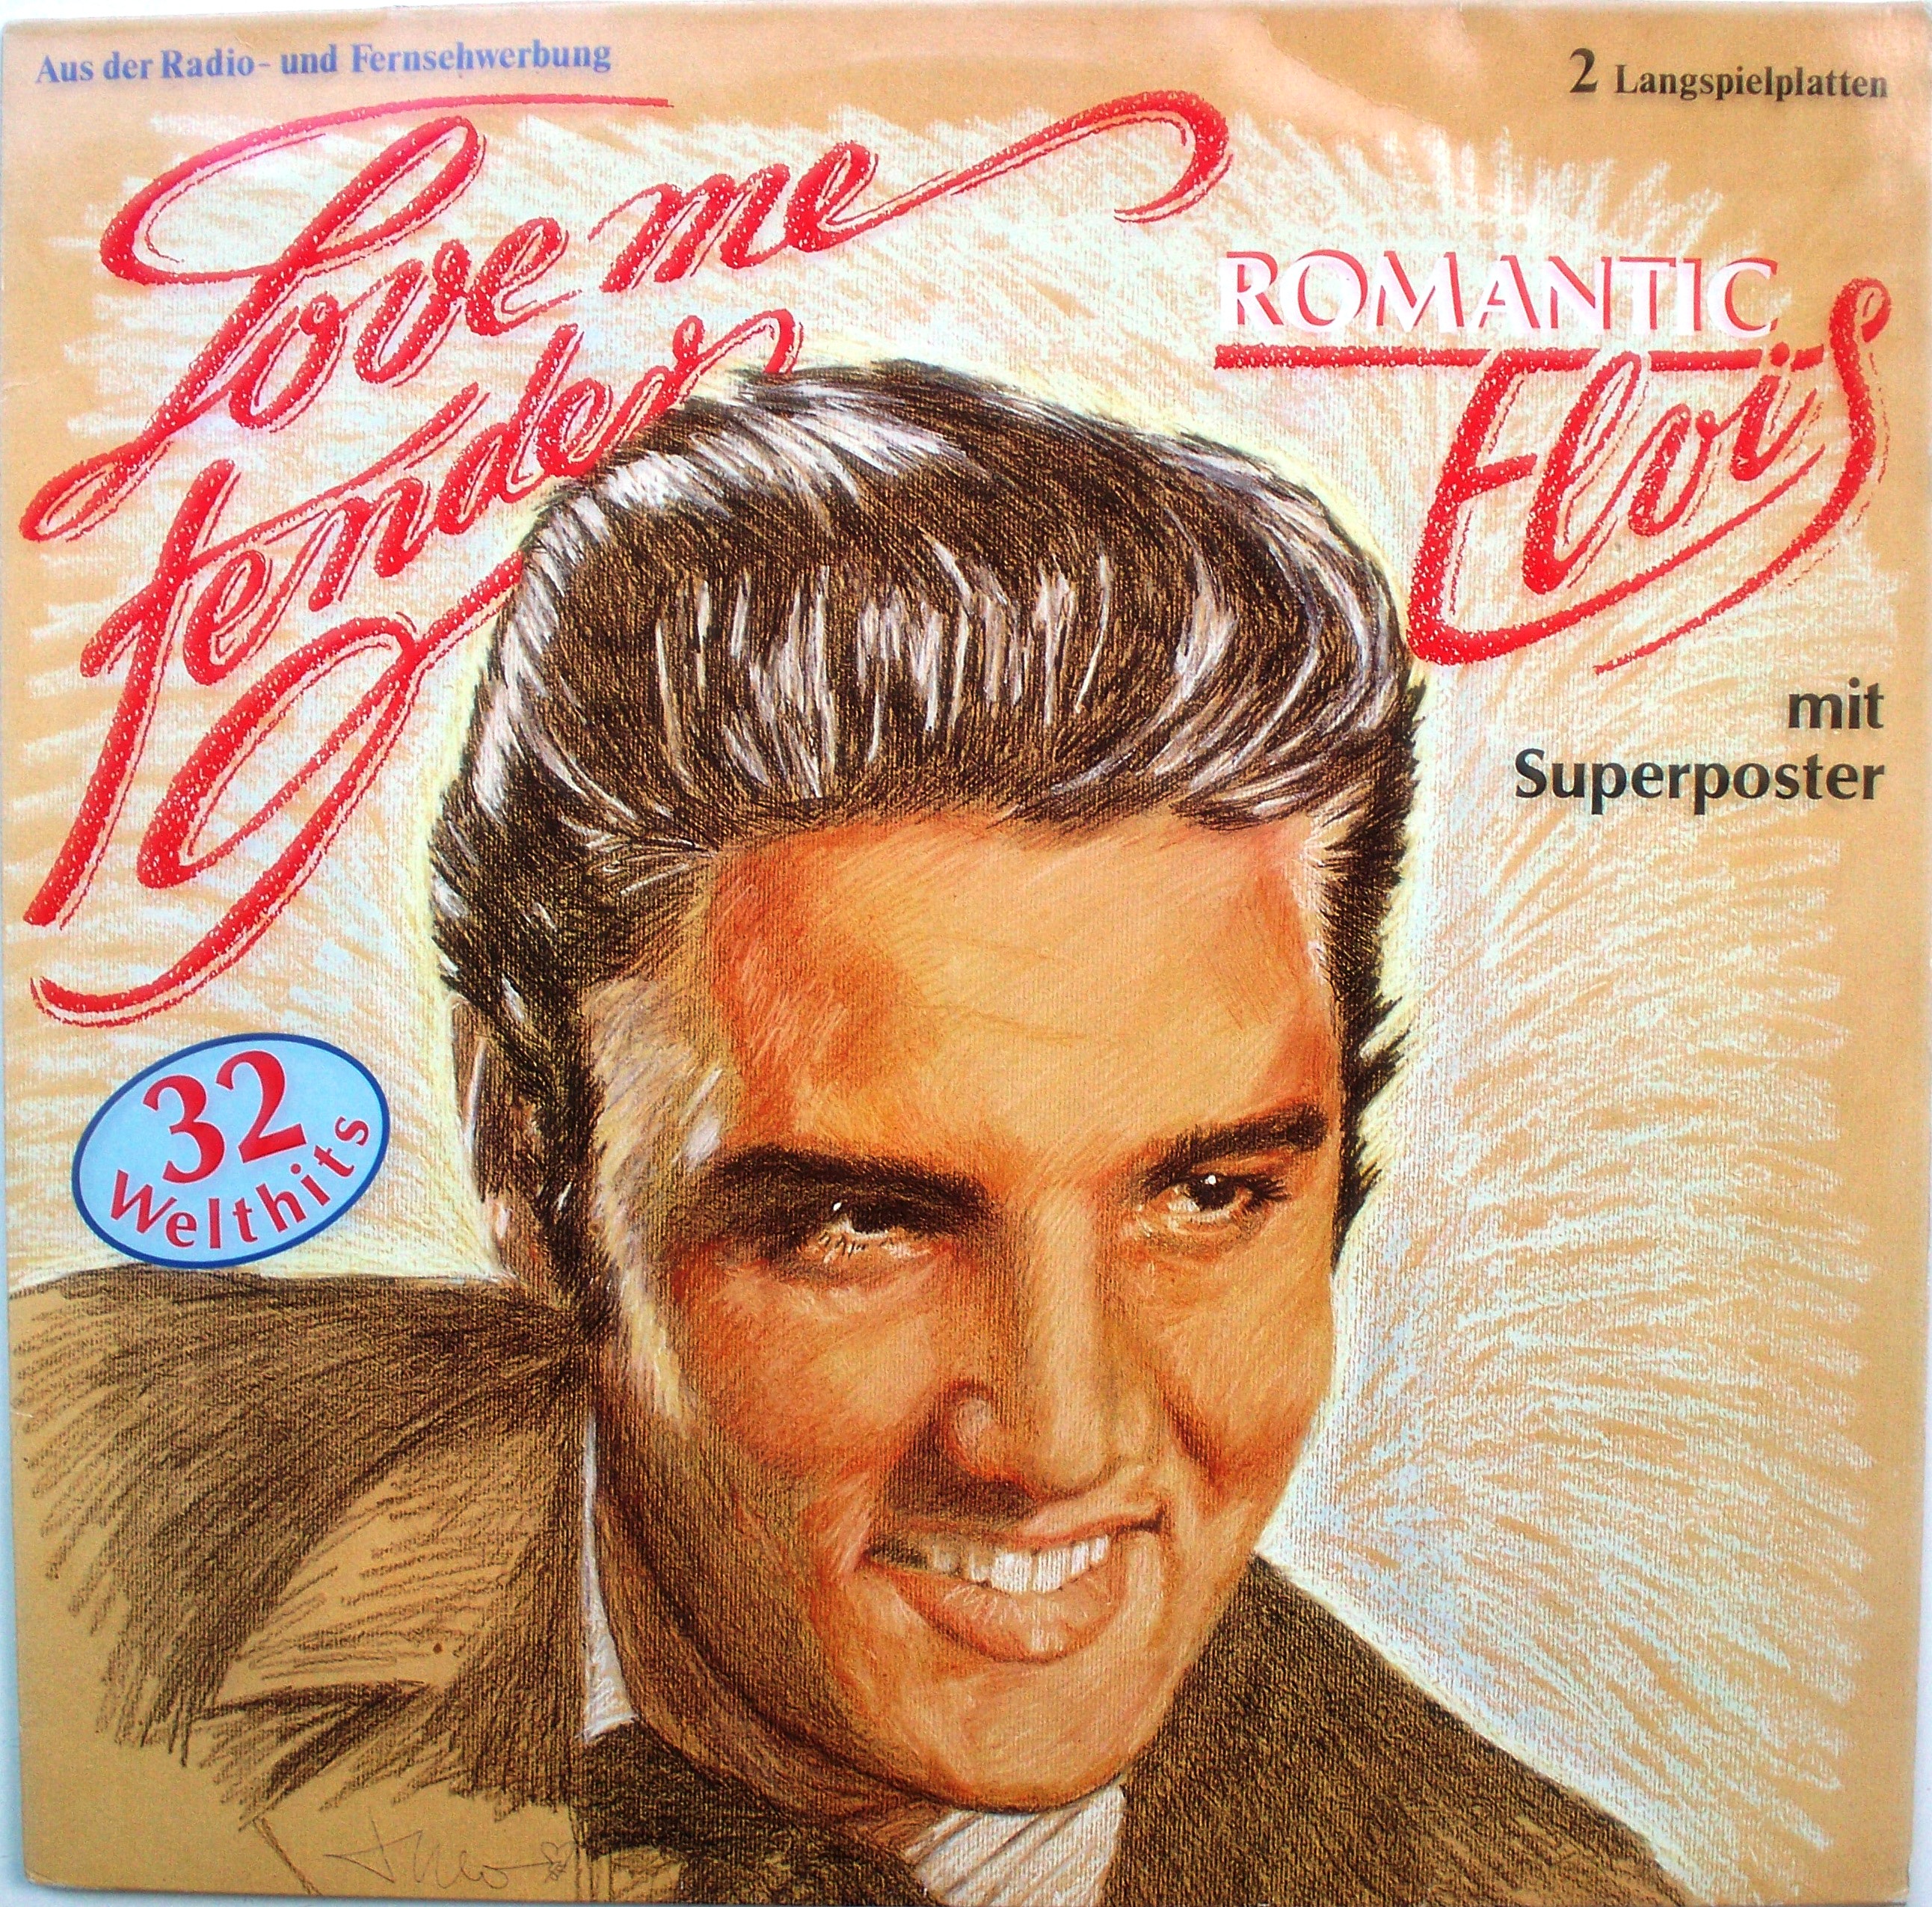 Love me tender элвис. Elvis Presley Love me tender обложка. Элвис Пресли 50s. Elvis Presley "Love Songs".